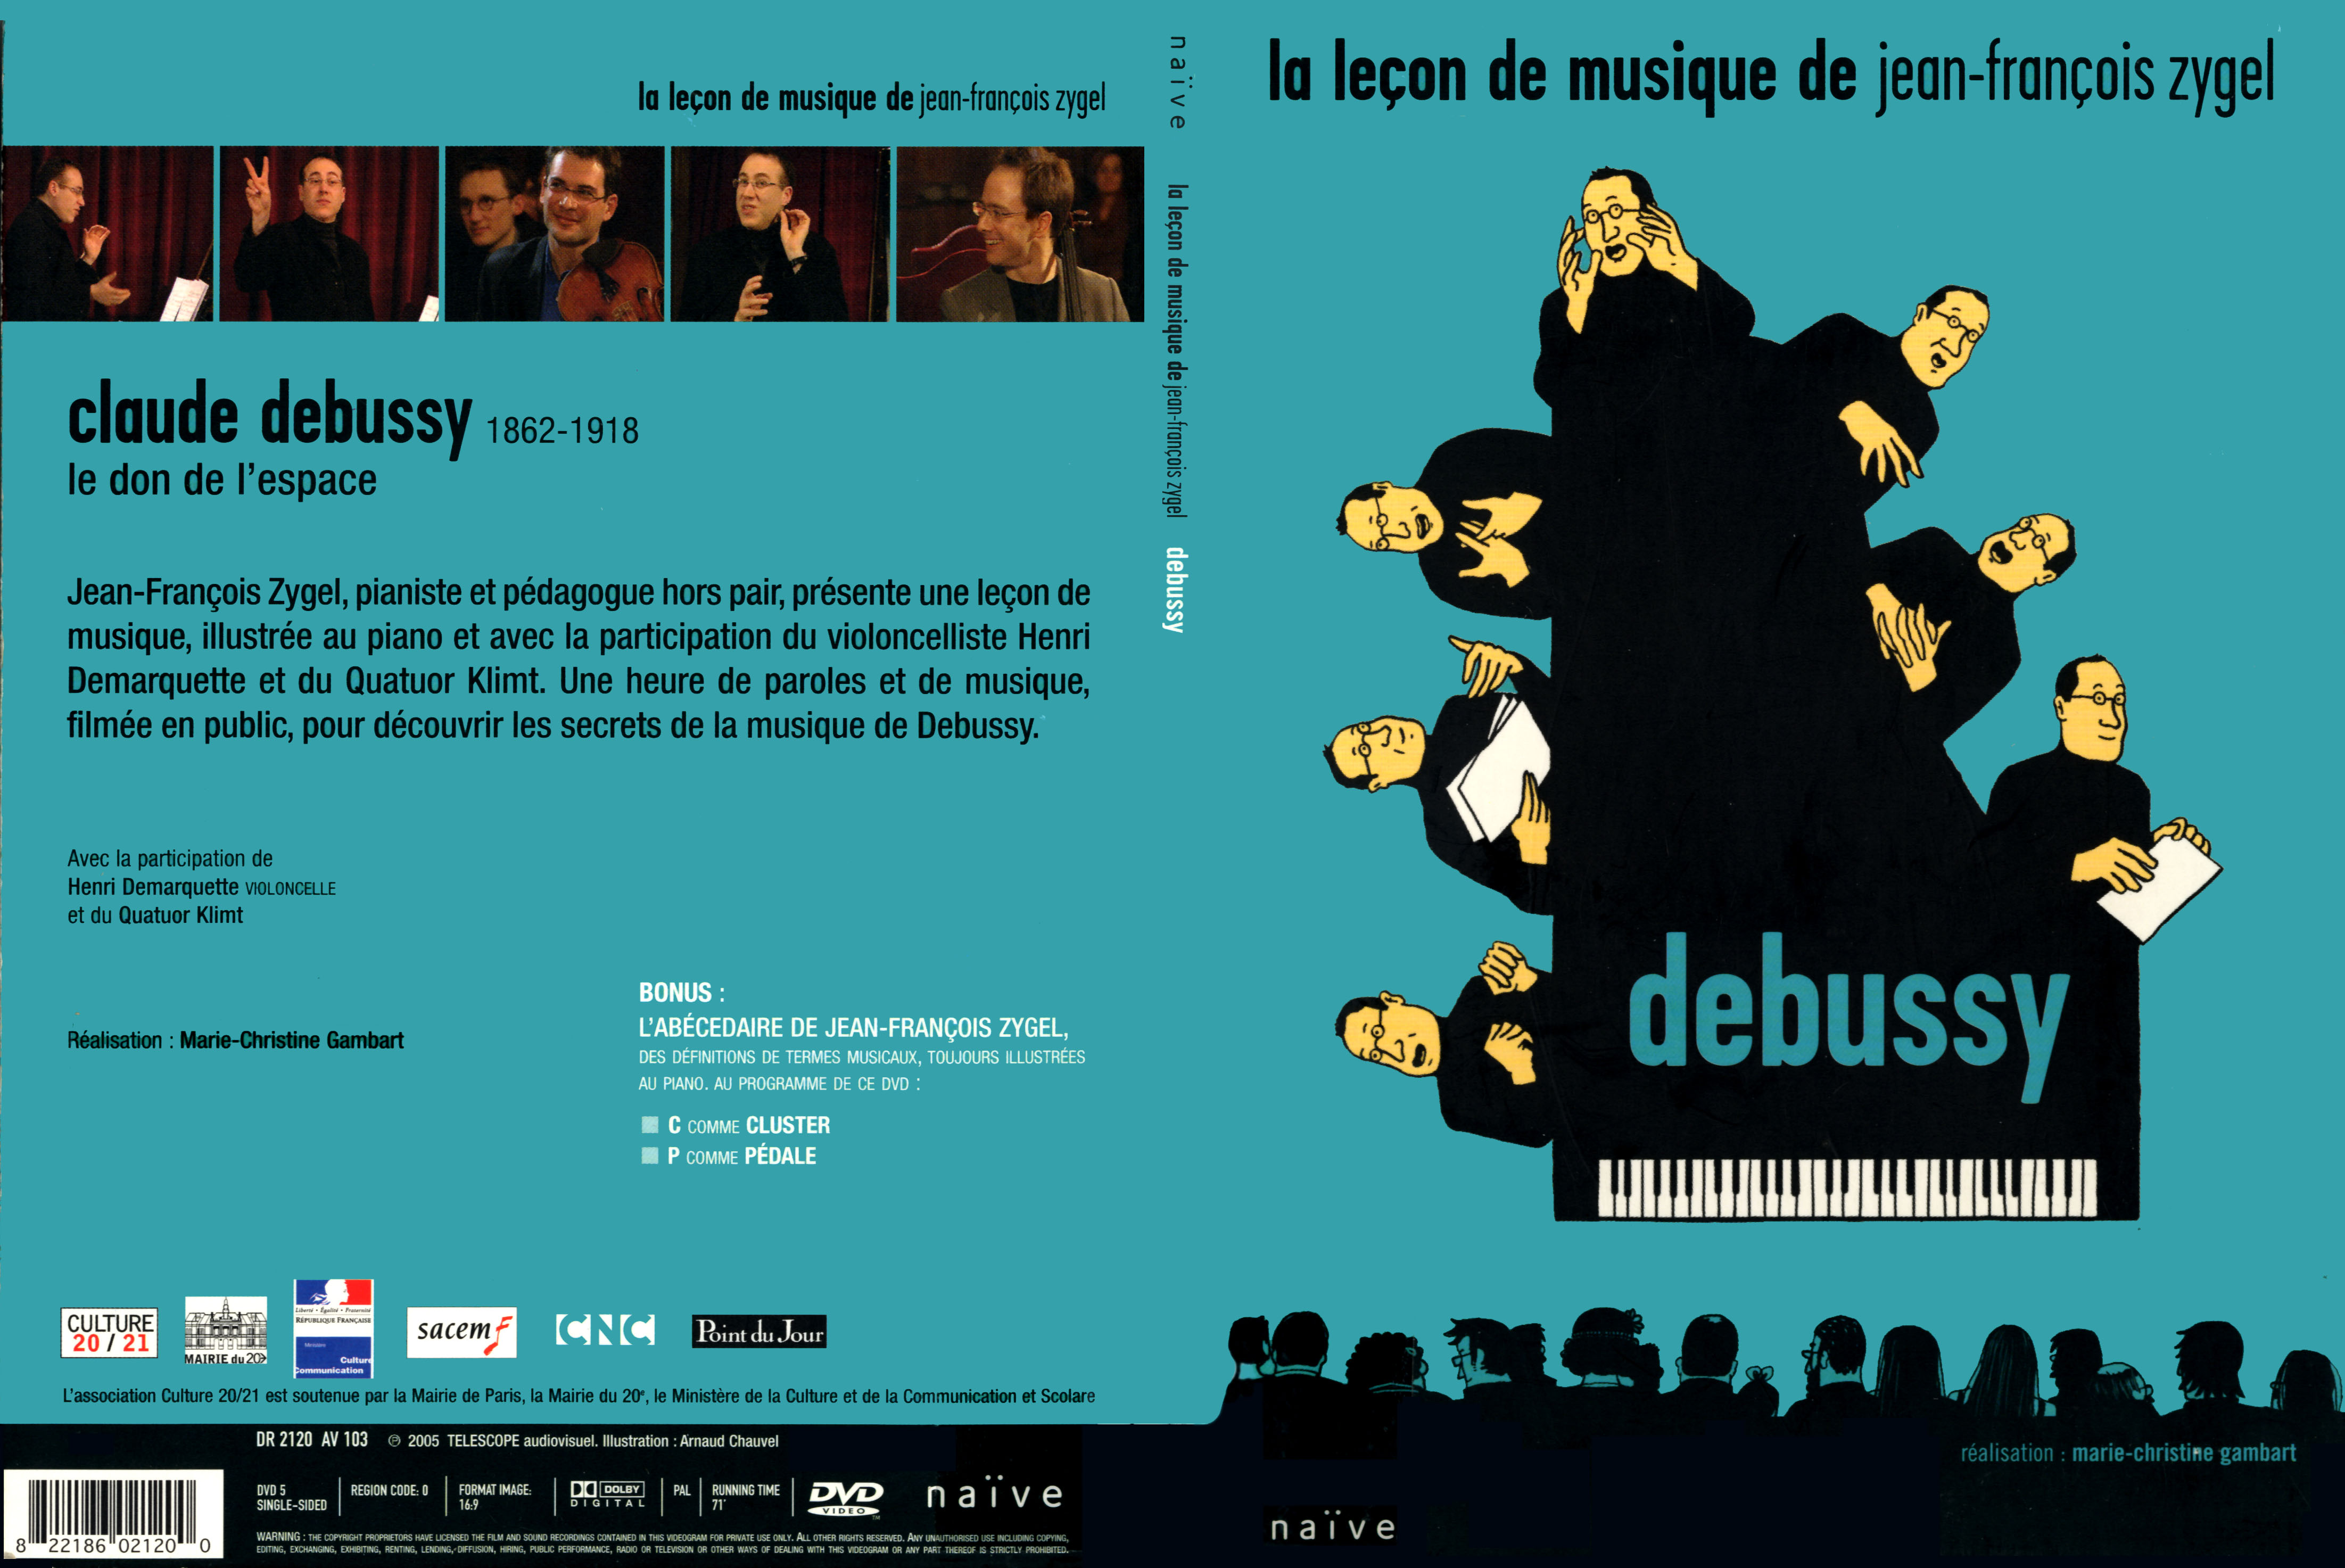 Jaquette DVD La lecon de musique de Jean-Francois Zygel - Debussy